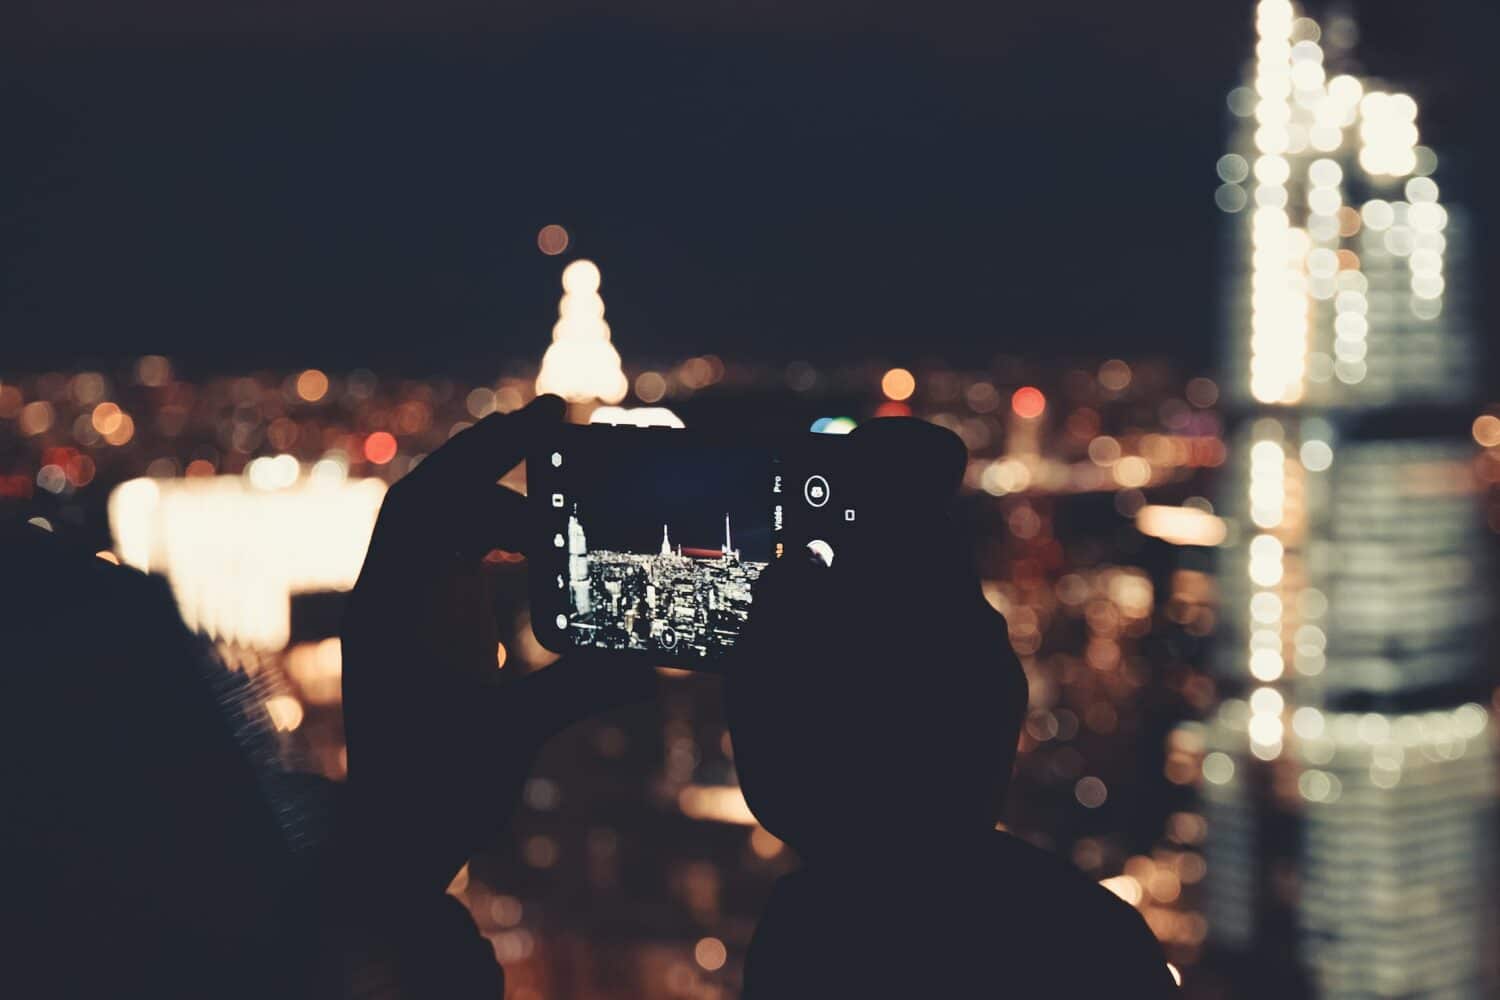 Uma pessoa segurando um celular para tirar uma foto de um prédio iluminado em Nova York